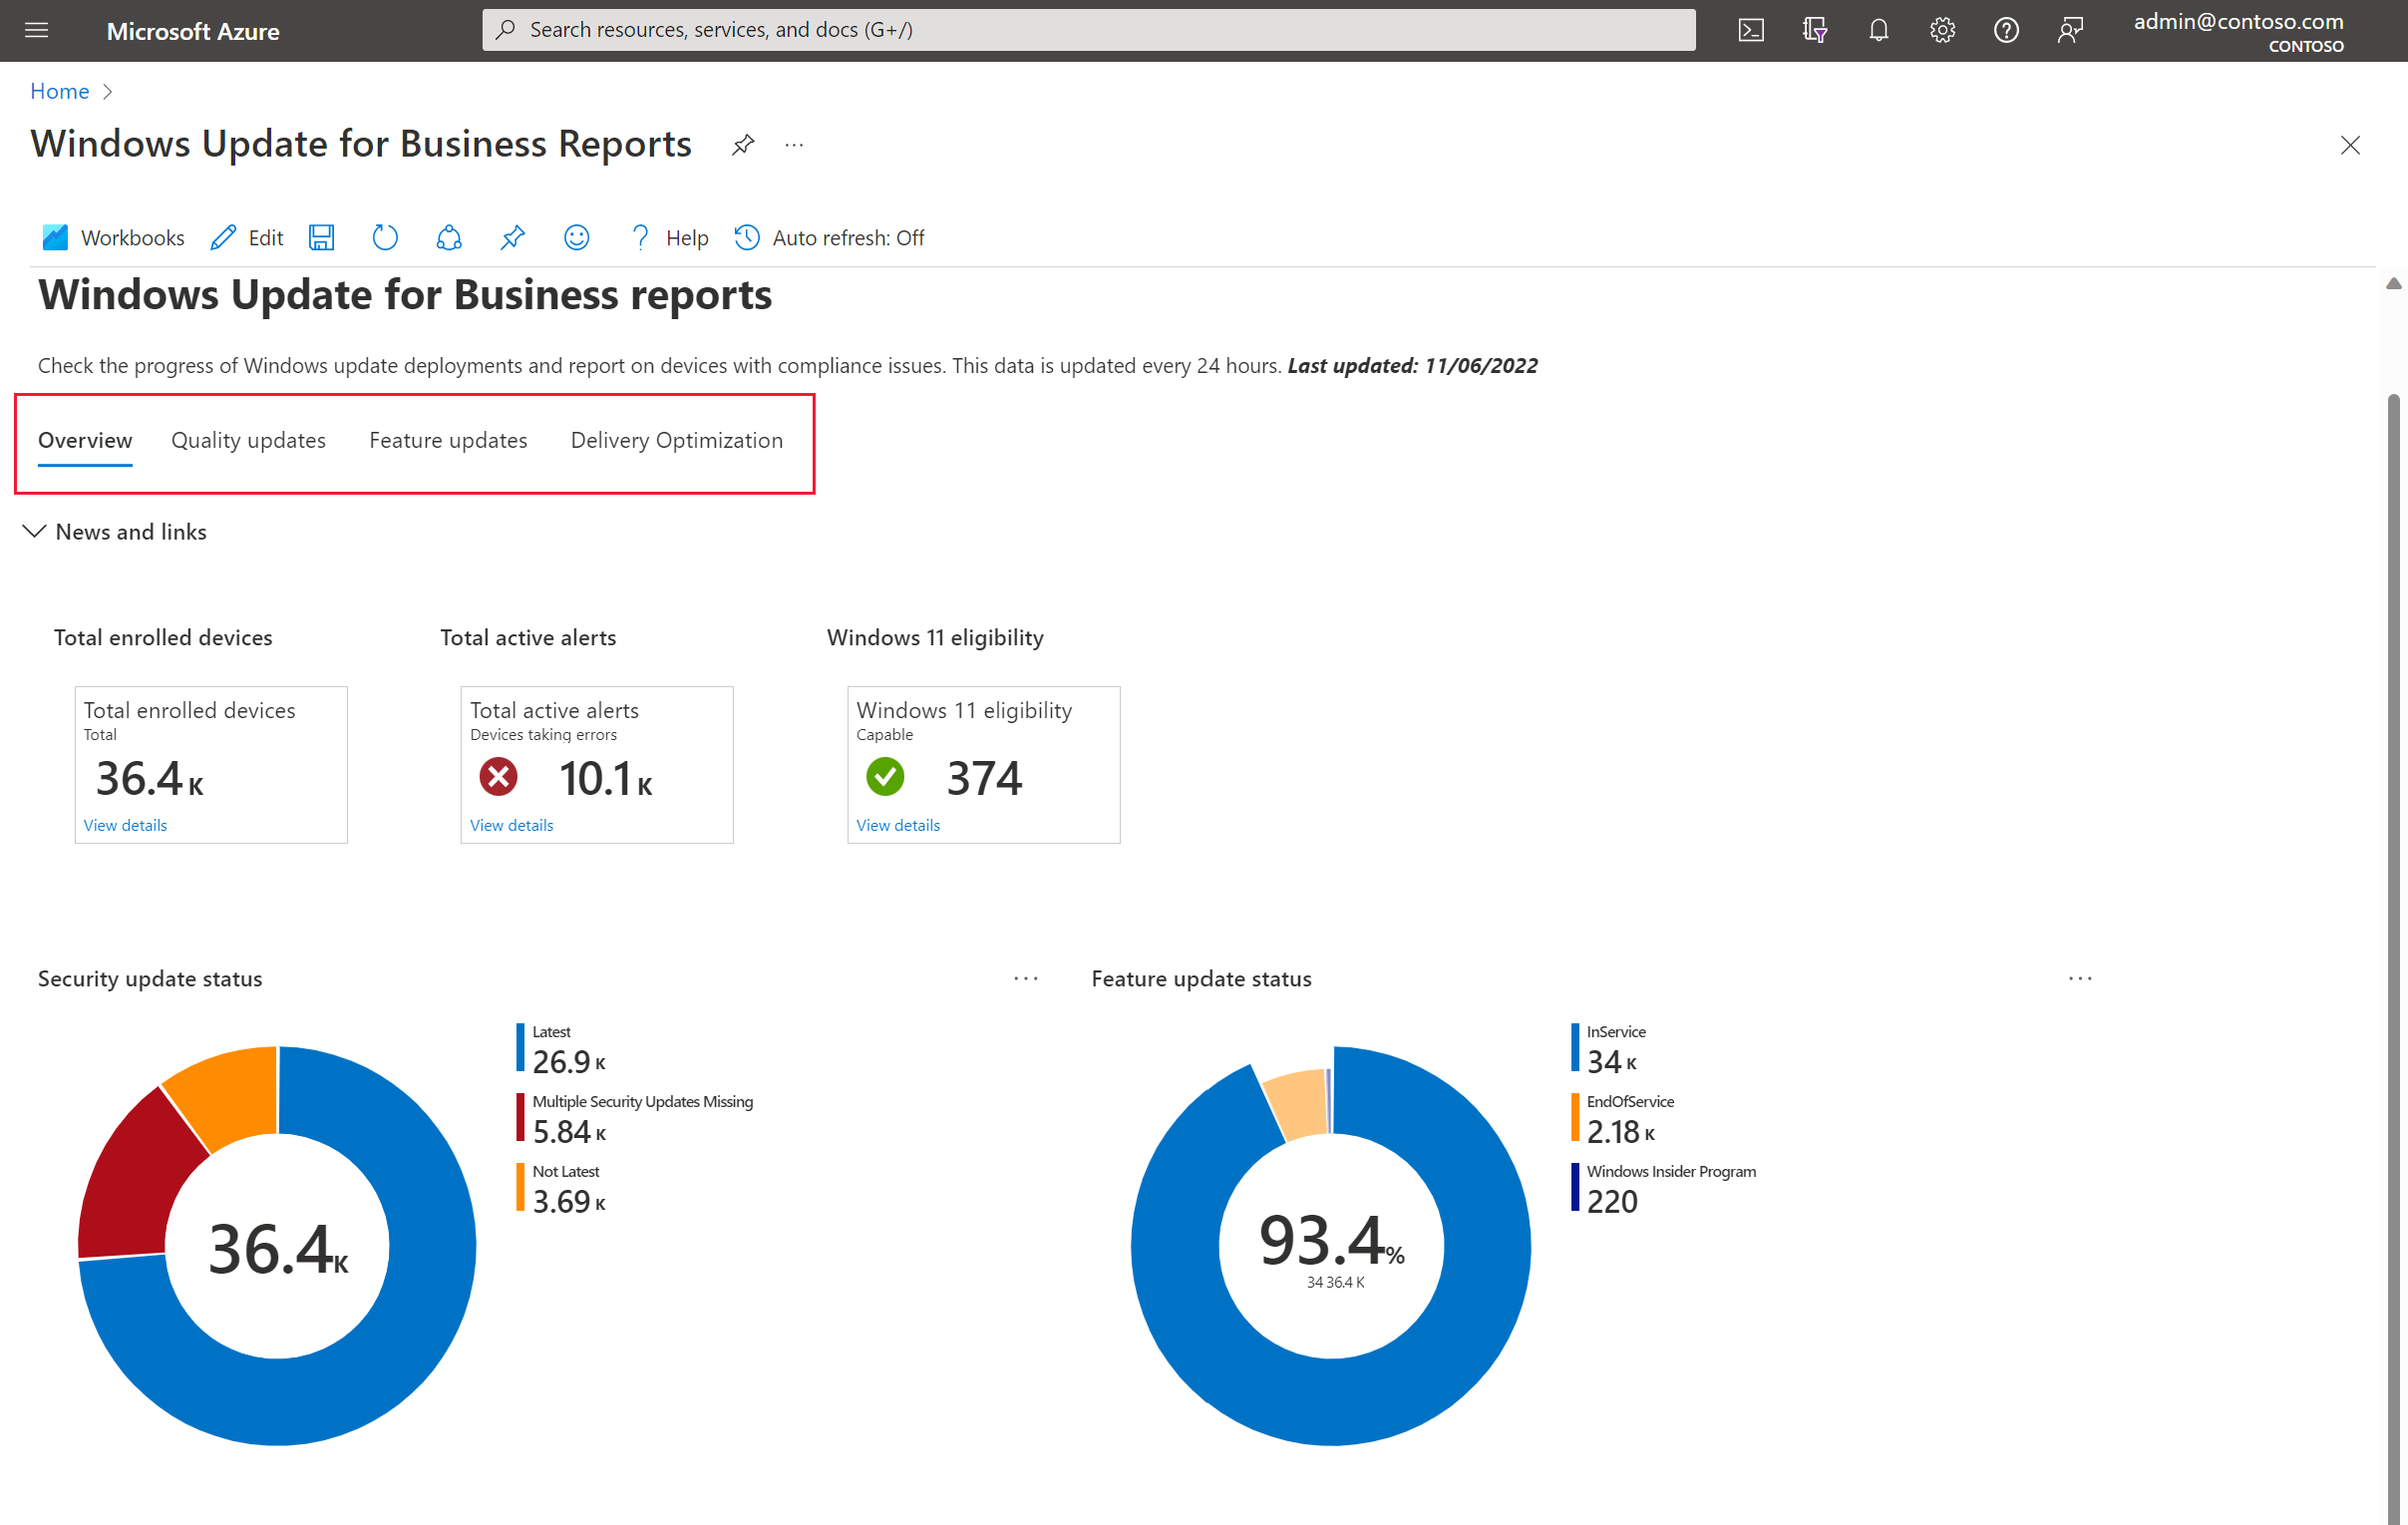 Usare la cartella di lavoro per i report di Windows Update for Business -  Windows Deployment | Microsoft Learn